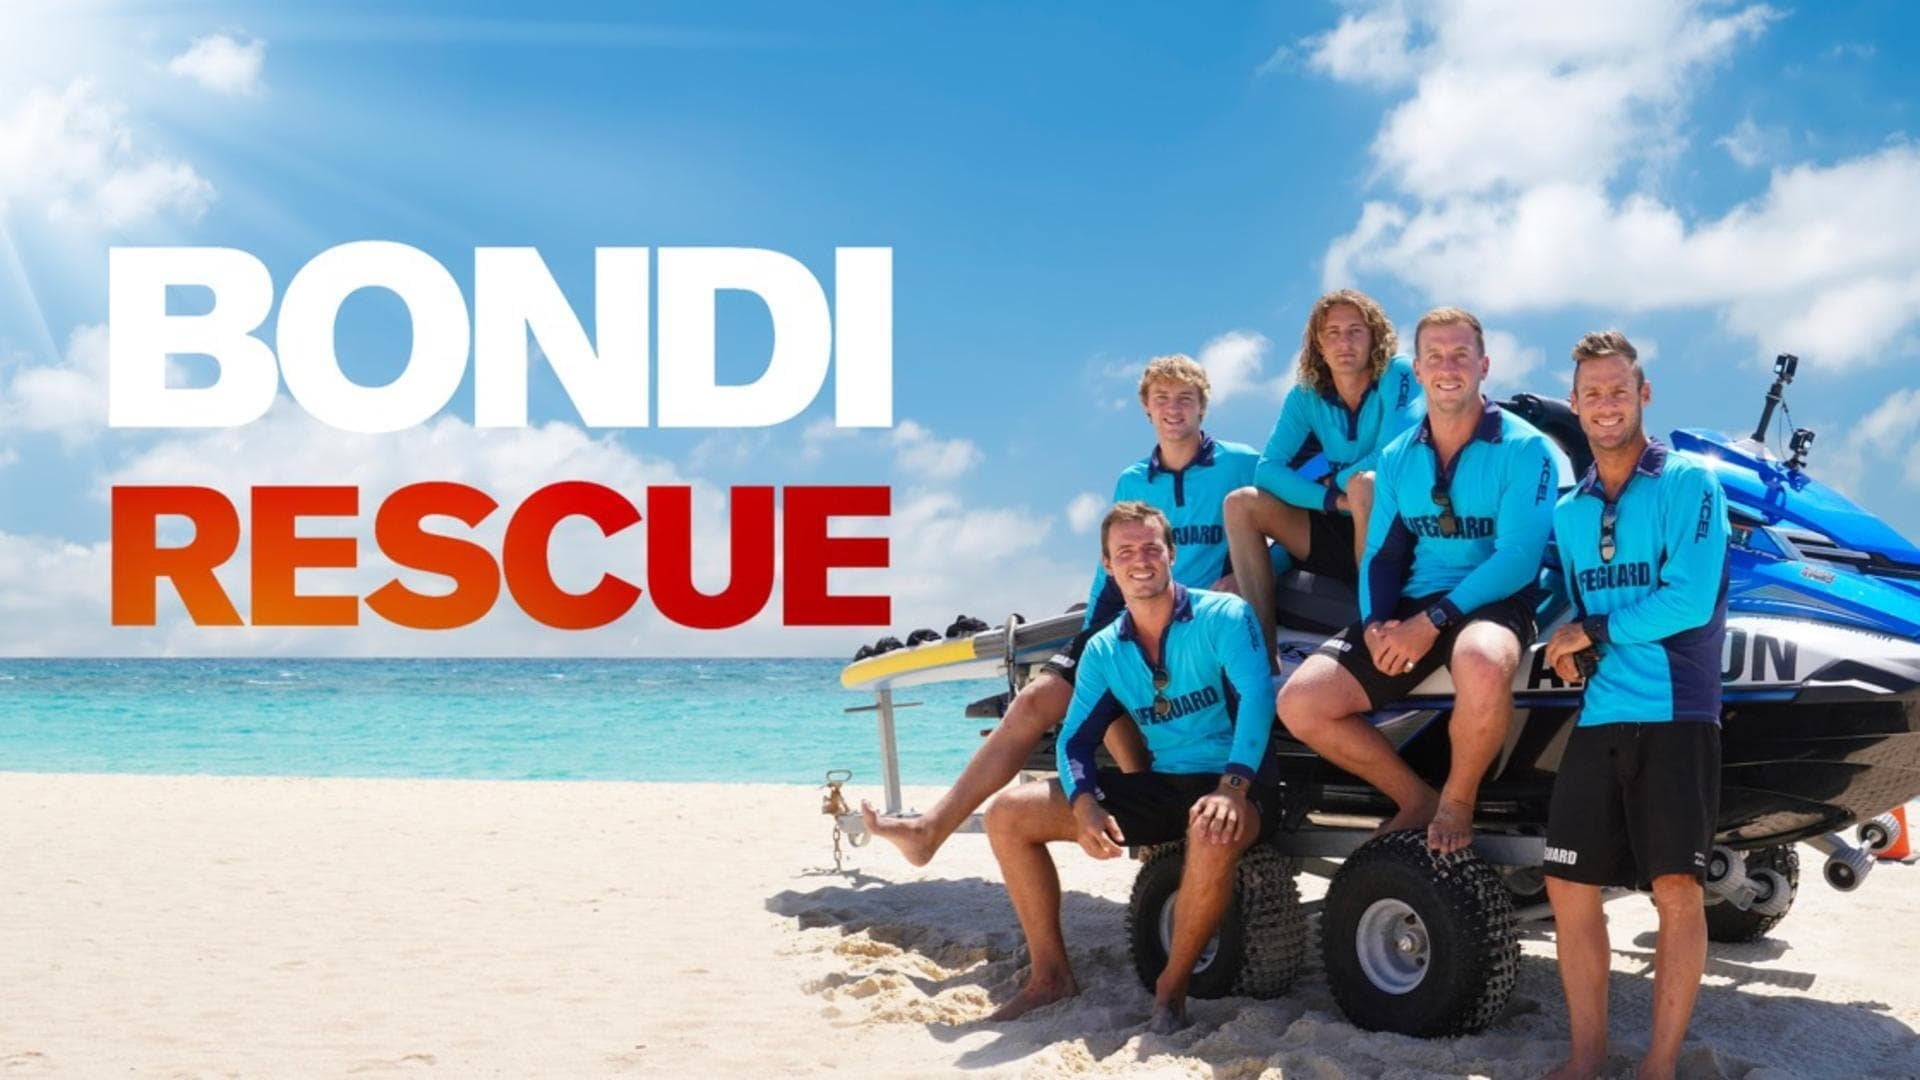 How To Watch Bondi Rescue Bondi Rescue Nicola Secrets Woman Atherton